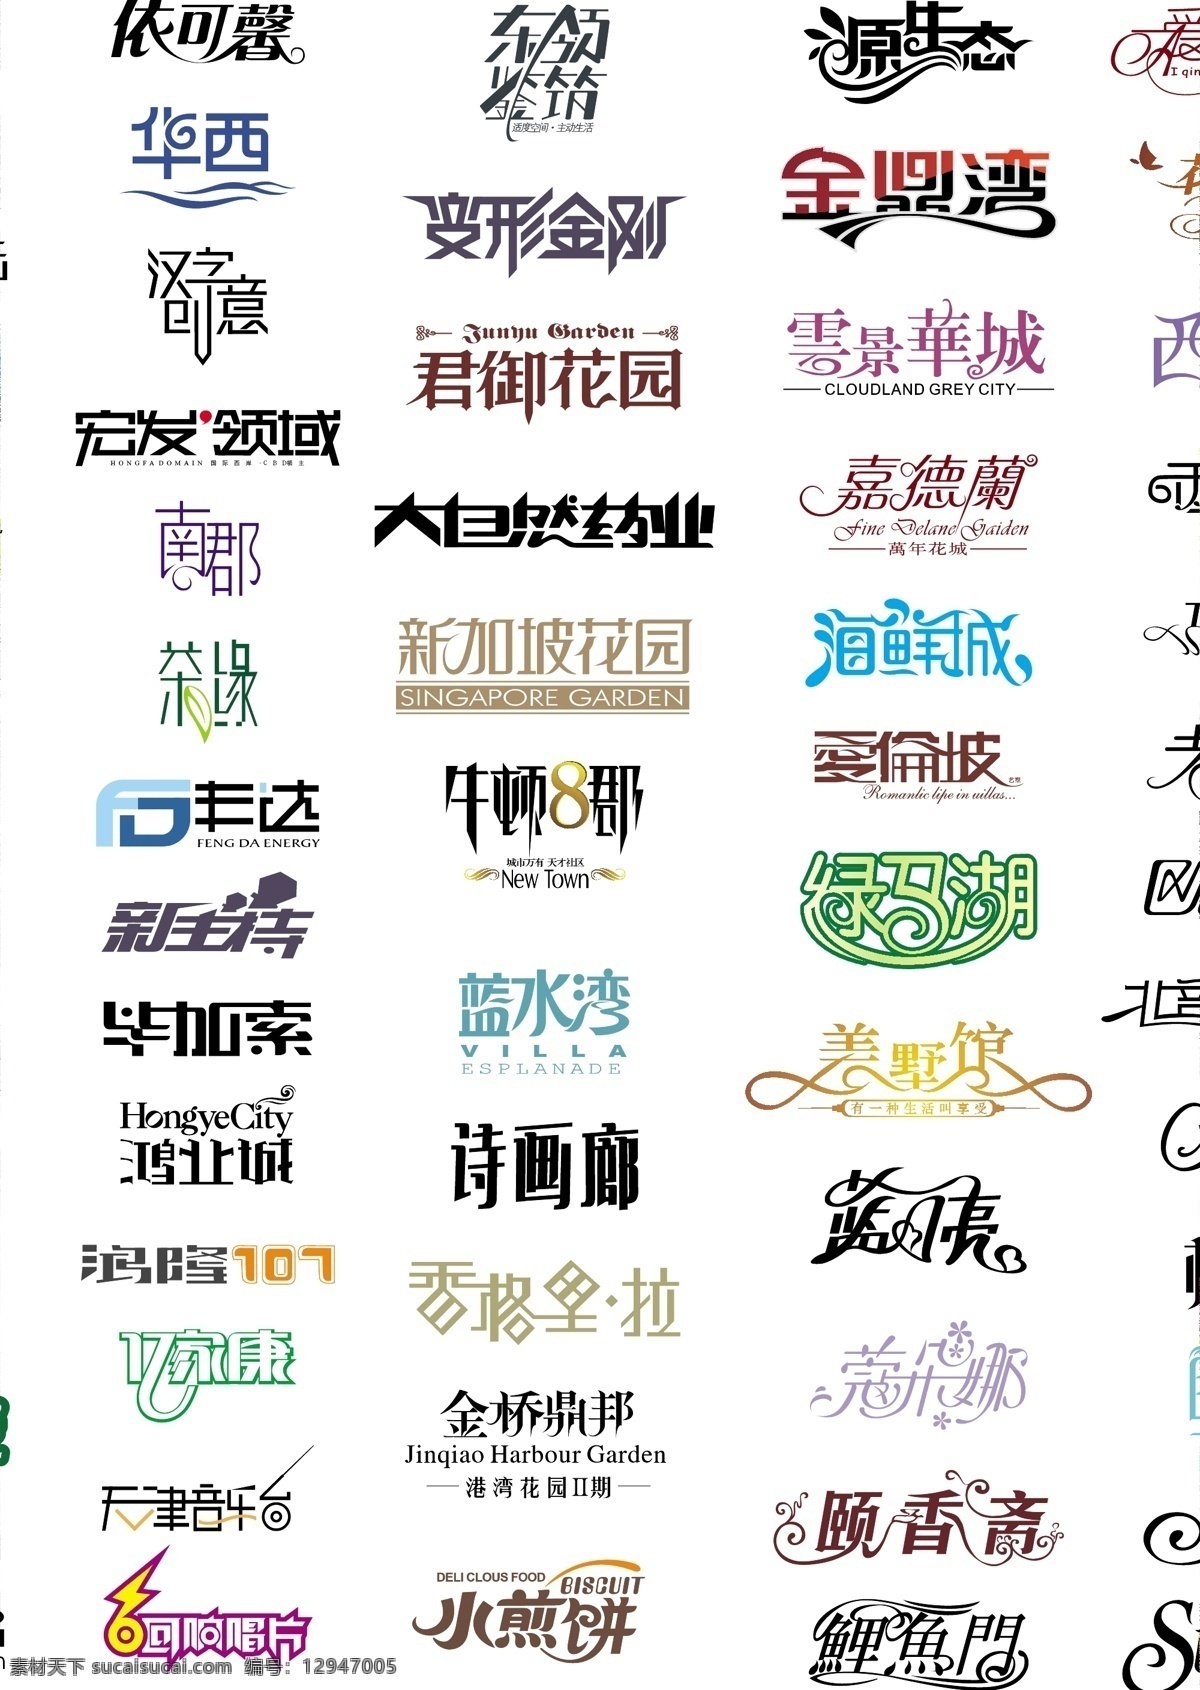 中文字体 合集 字体 中文 中文设计 字体设计 淘宝 淘宝美工 淘宝设计 装修 色彩 通用 什么 可以 吃 淘宝界面设计